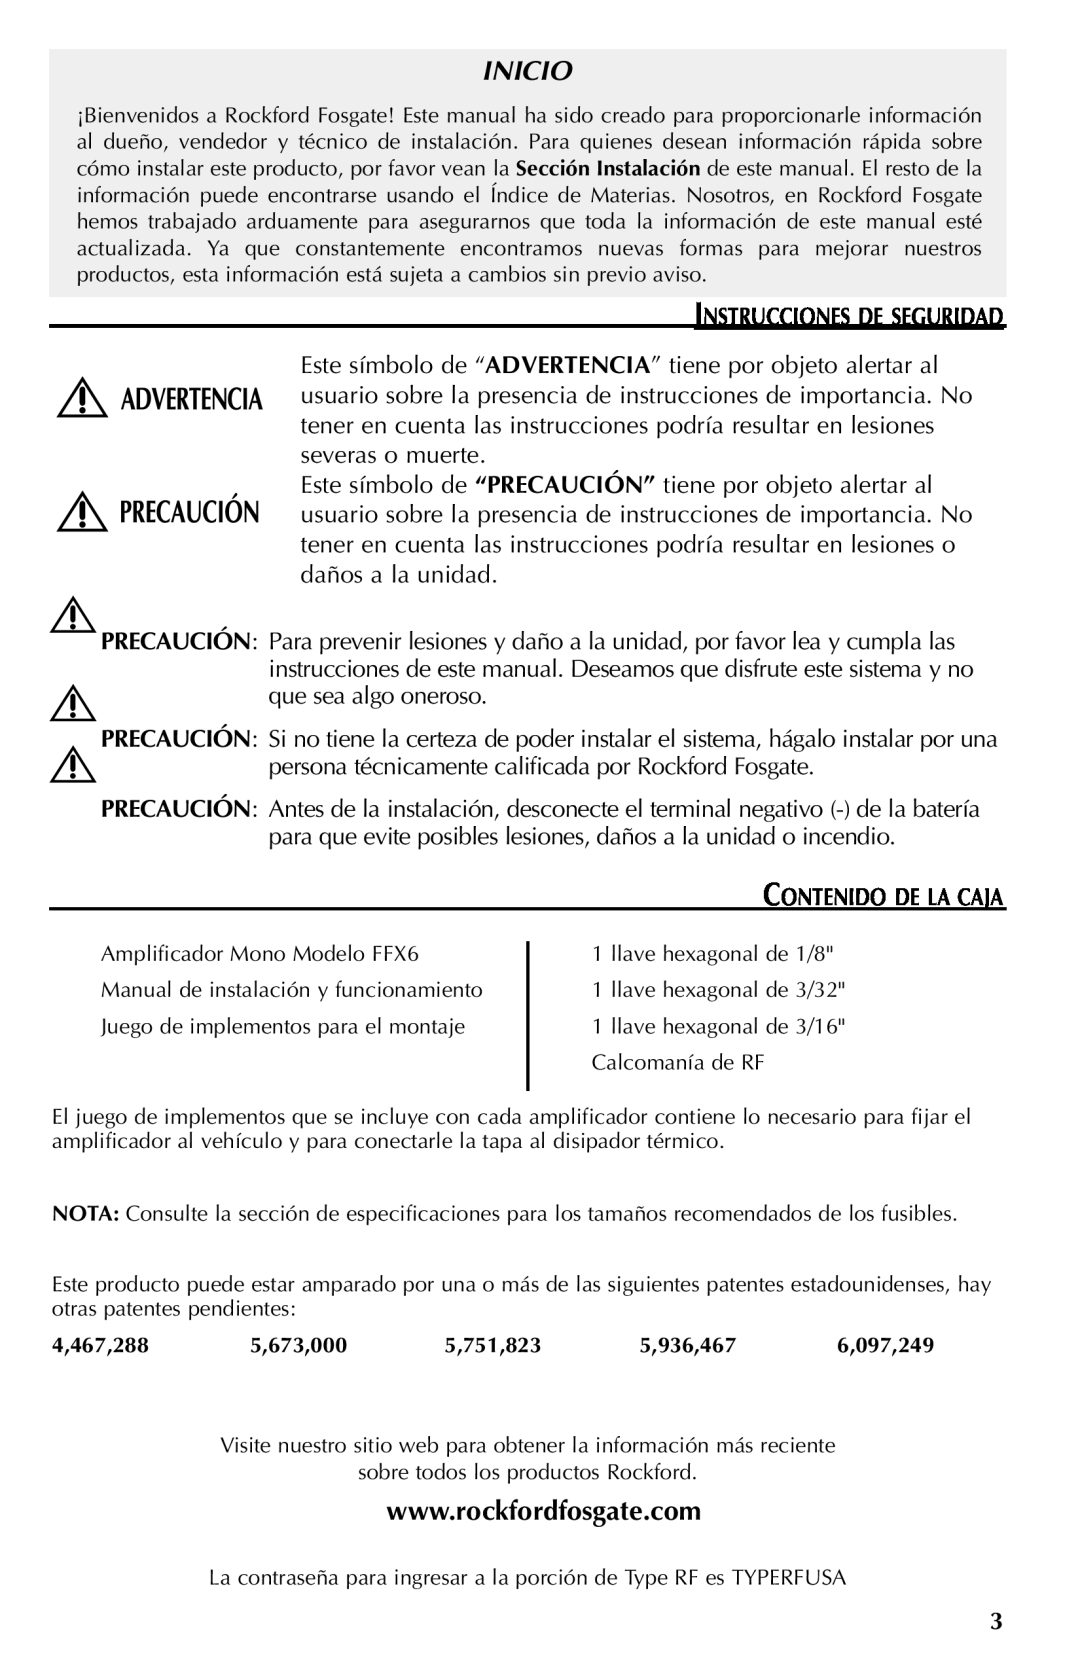 Rockford Fosgate FFX6 manual Inicio, Instrucciones De Seguridad 